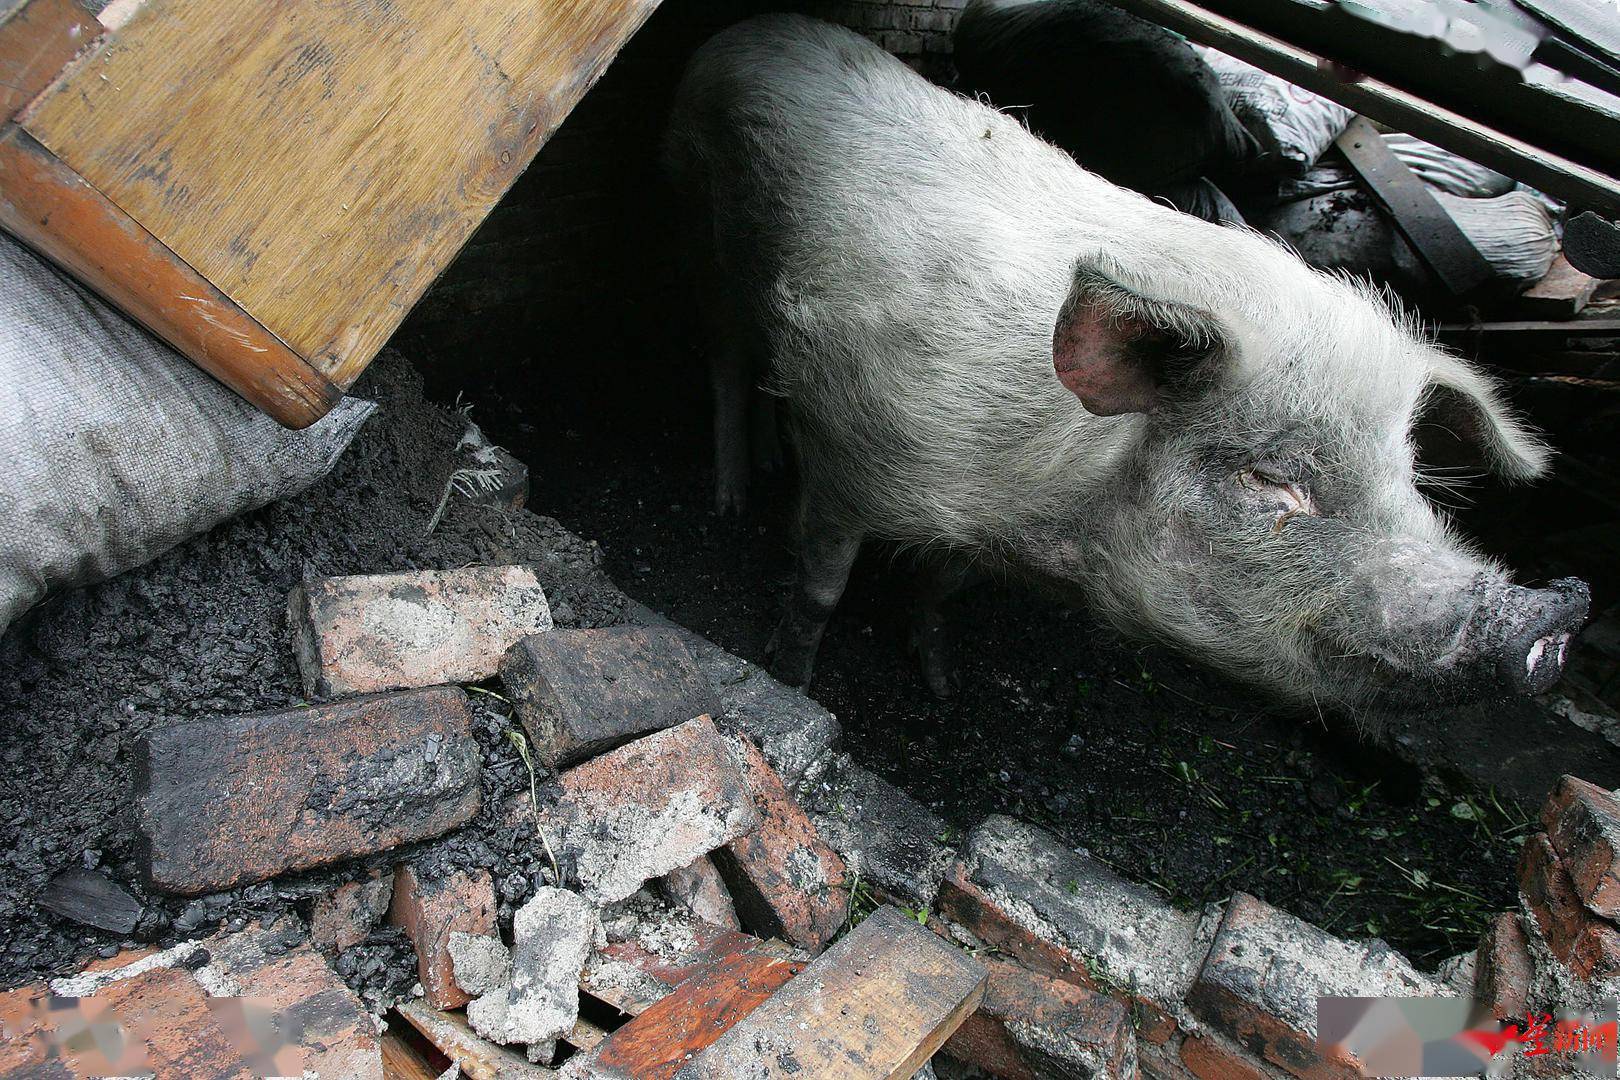 全国第一个报道猪坚强的记者:它从废墟获救后,两眼竟刷刷流泪,就像